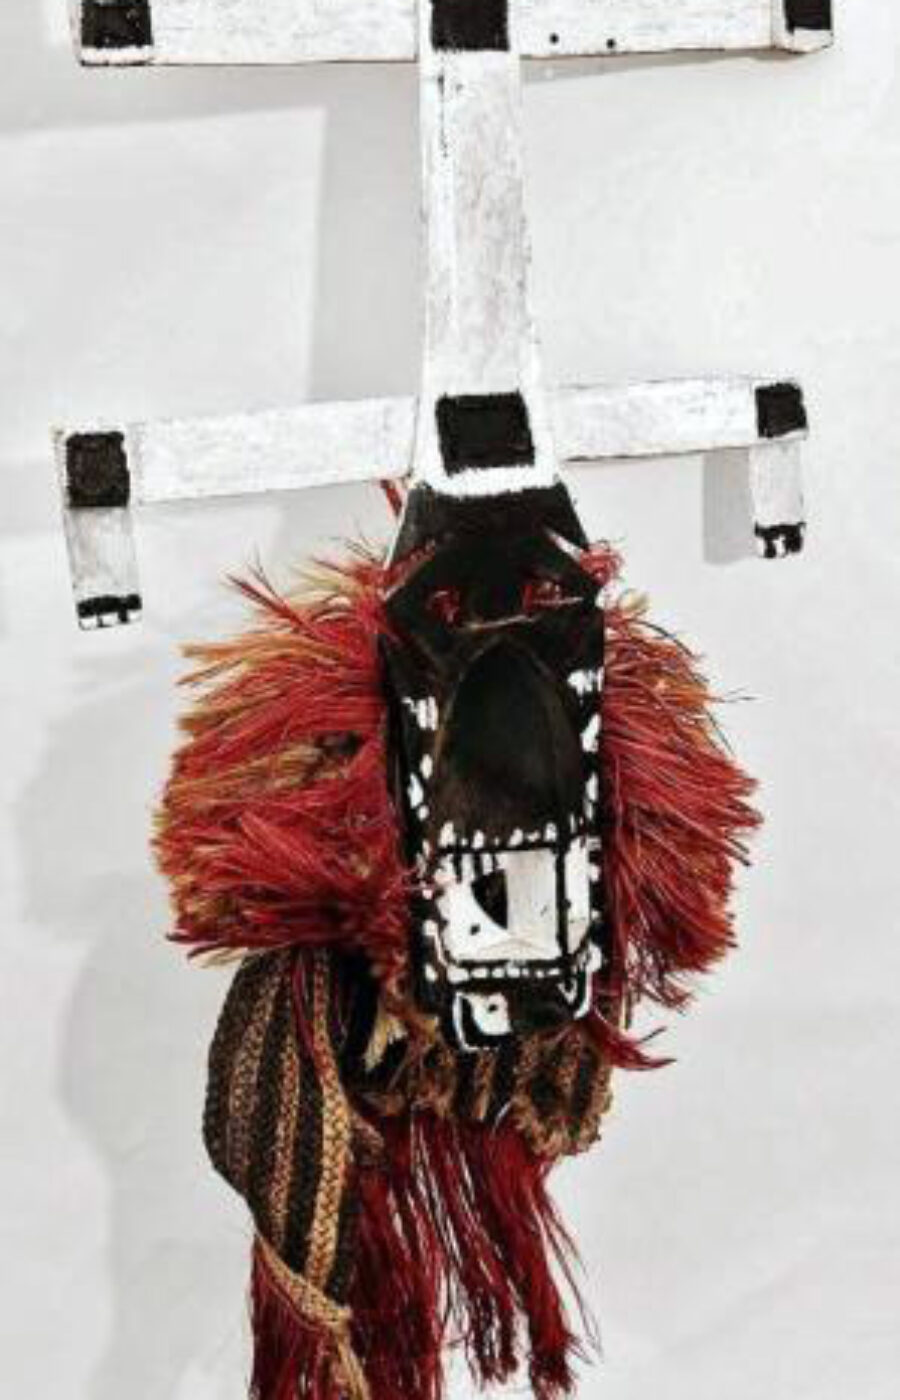 Ancien et rare masque anthropo-zoomorphe Kanaga de danses rituelles de l'association Awa avec sa coiffe ancienne de fibres  Peuple DOGON  Mali